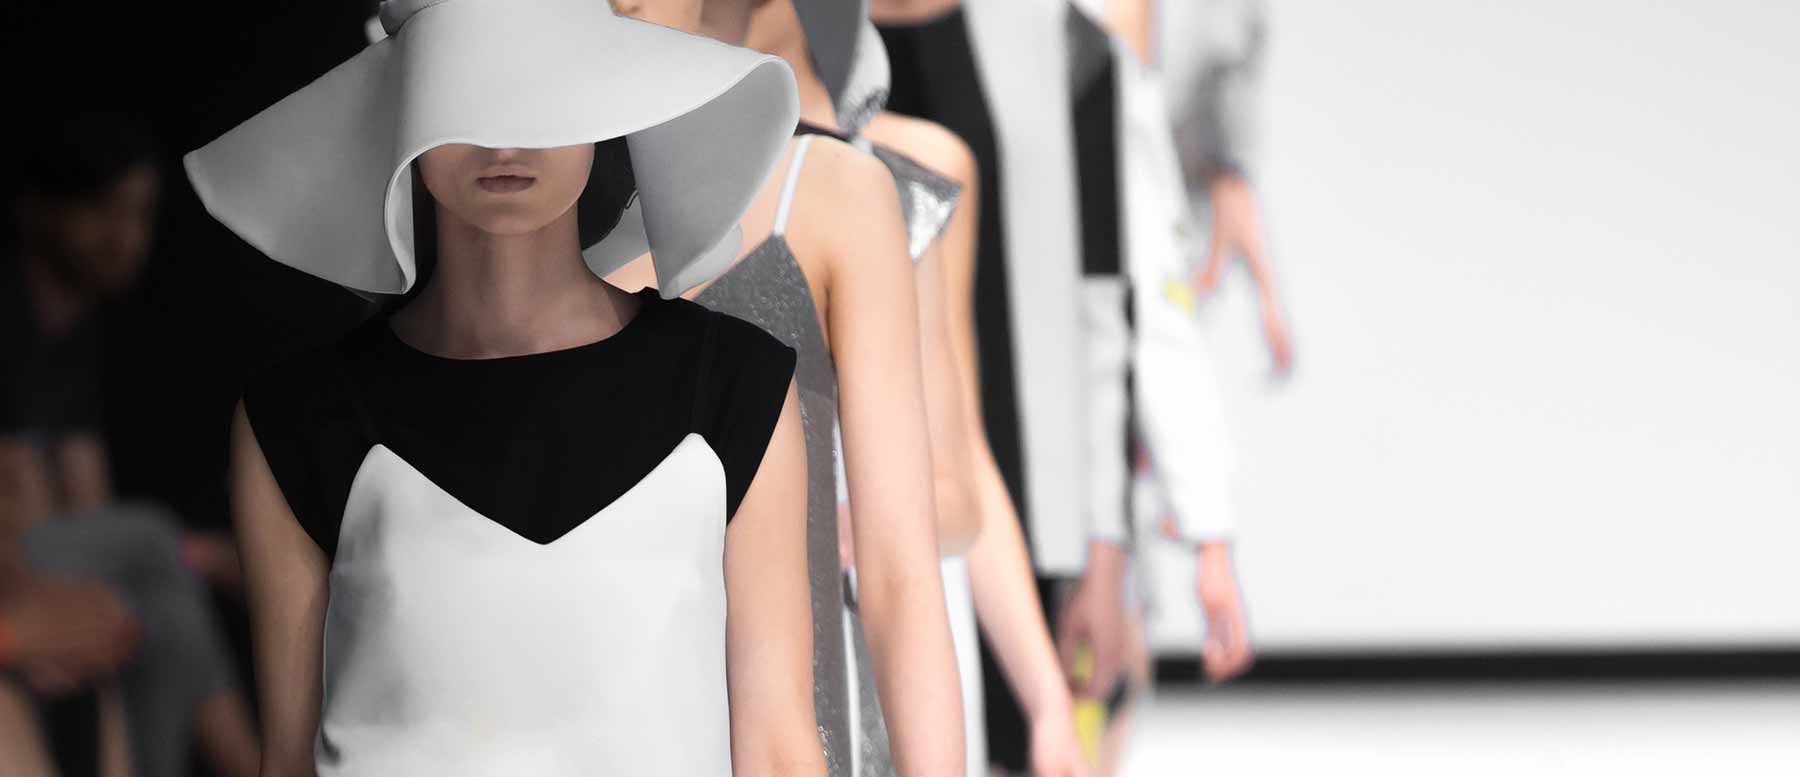 Milano Fashion Week 2022: come è andata e i brand protagonisti